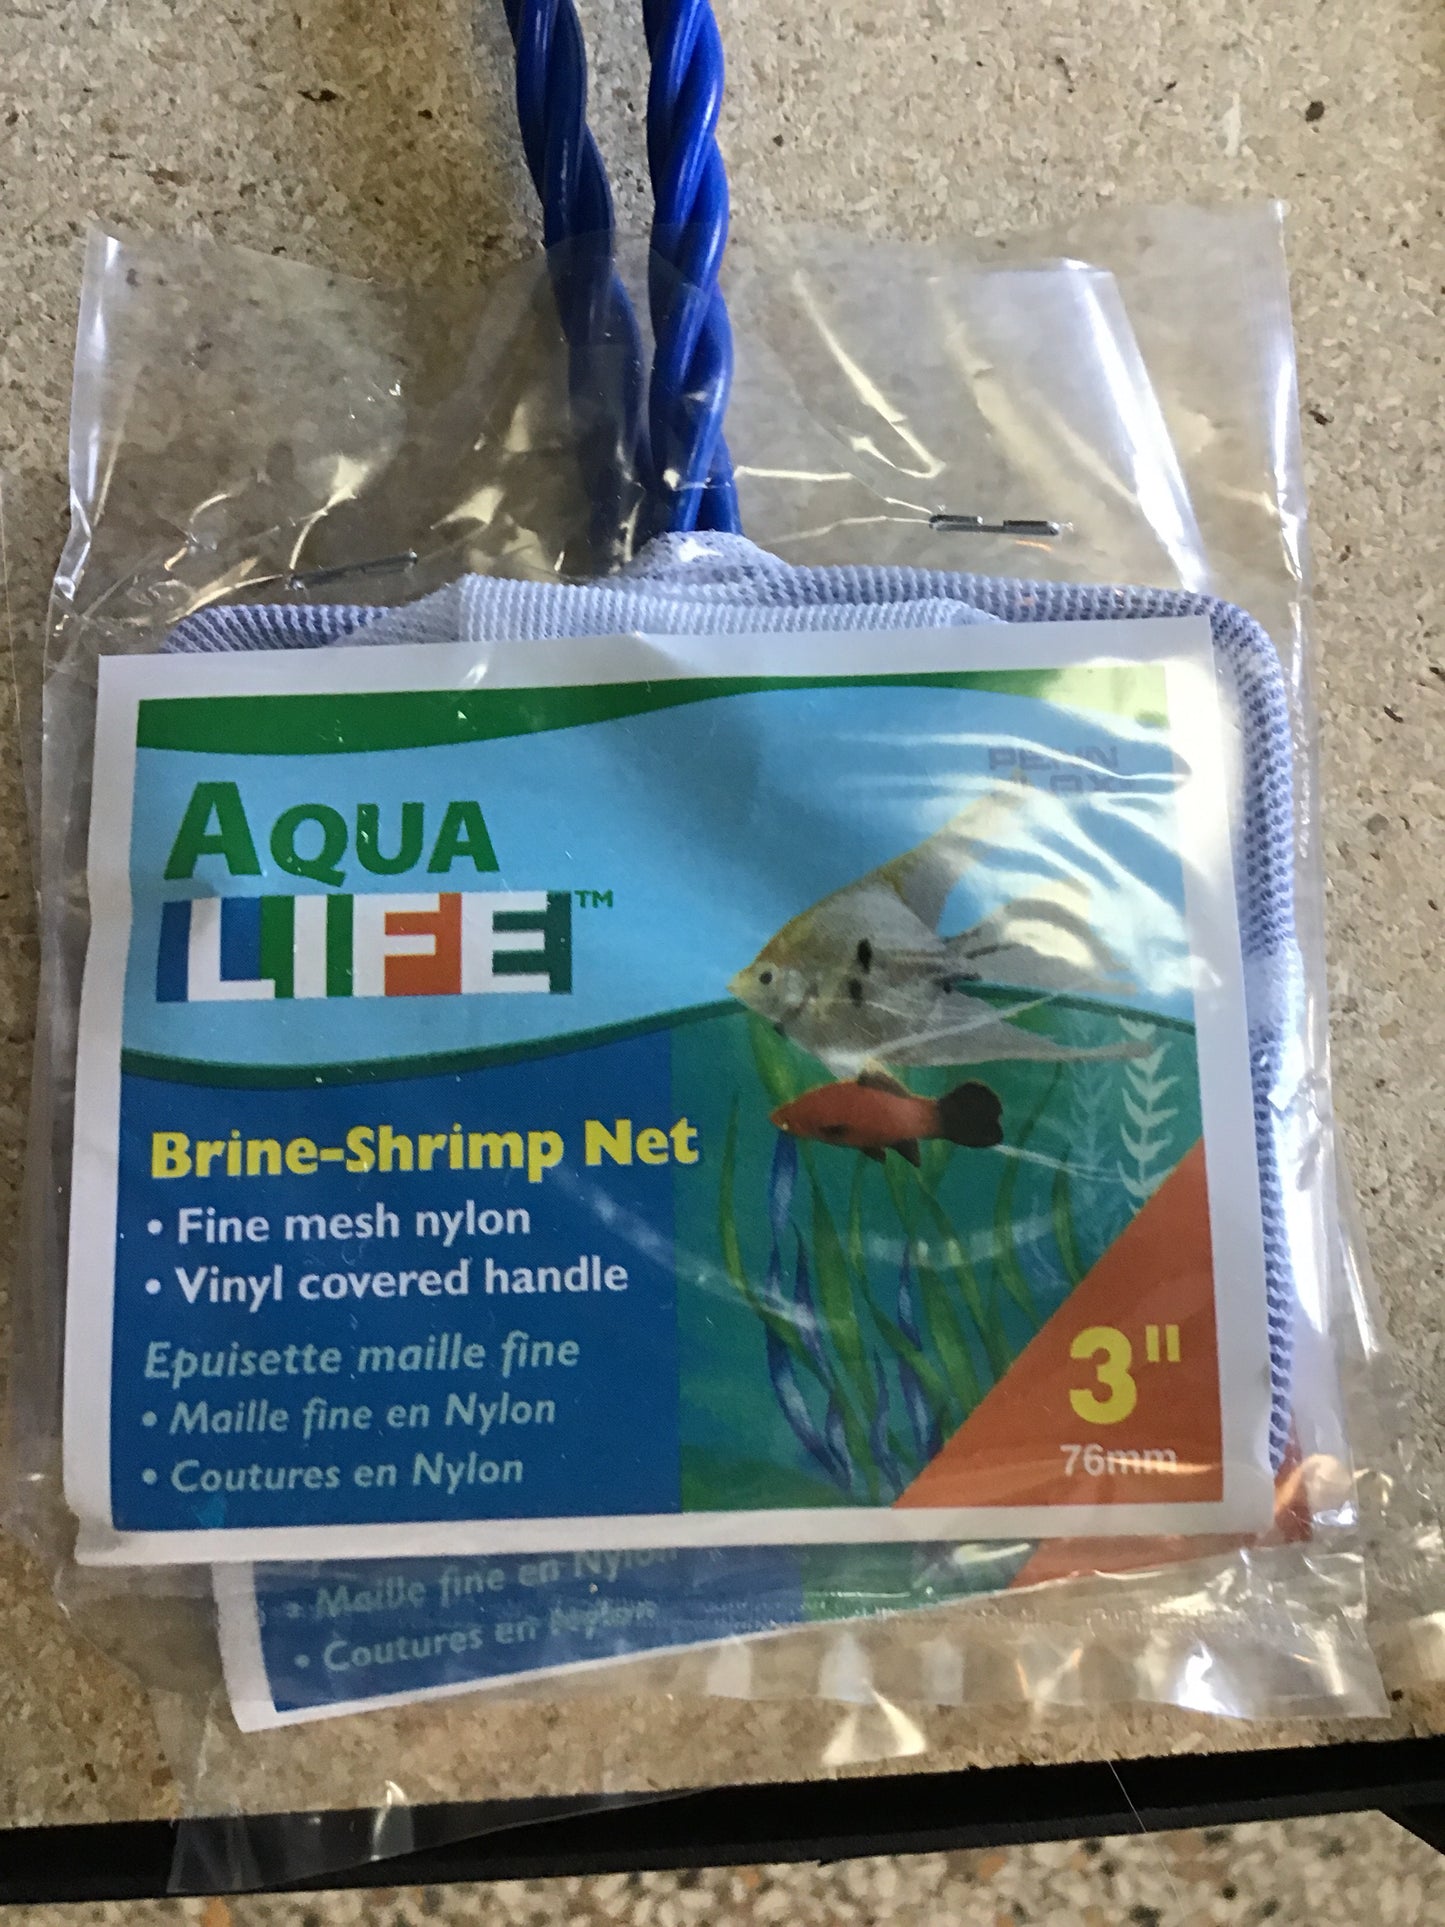 3” Brine shrimp net